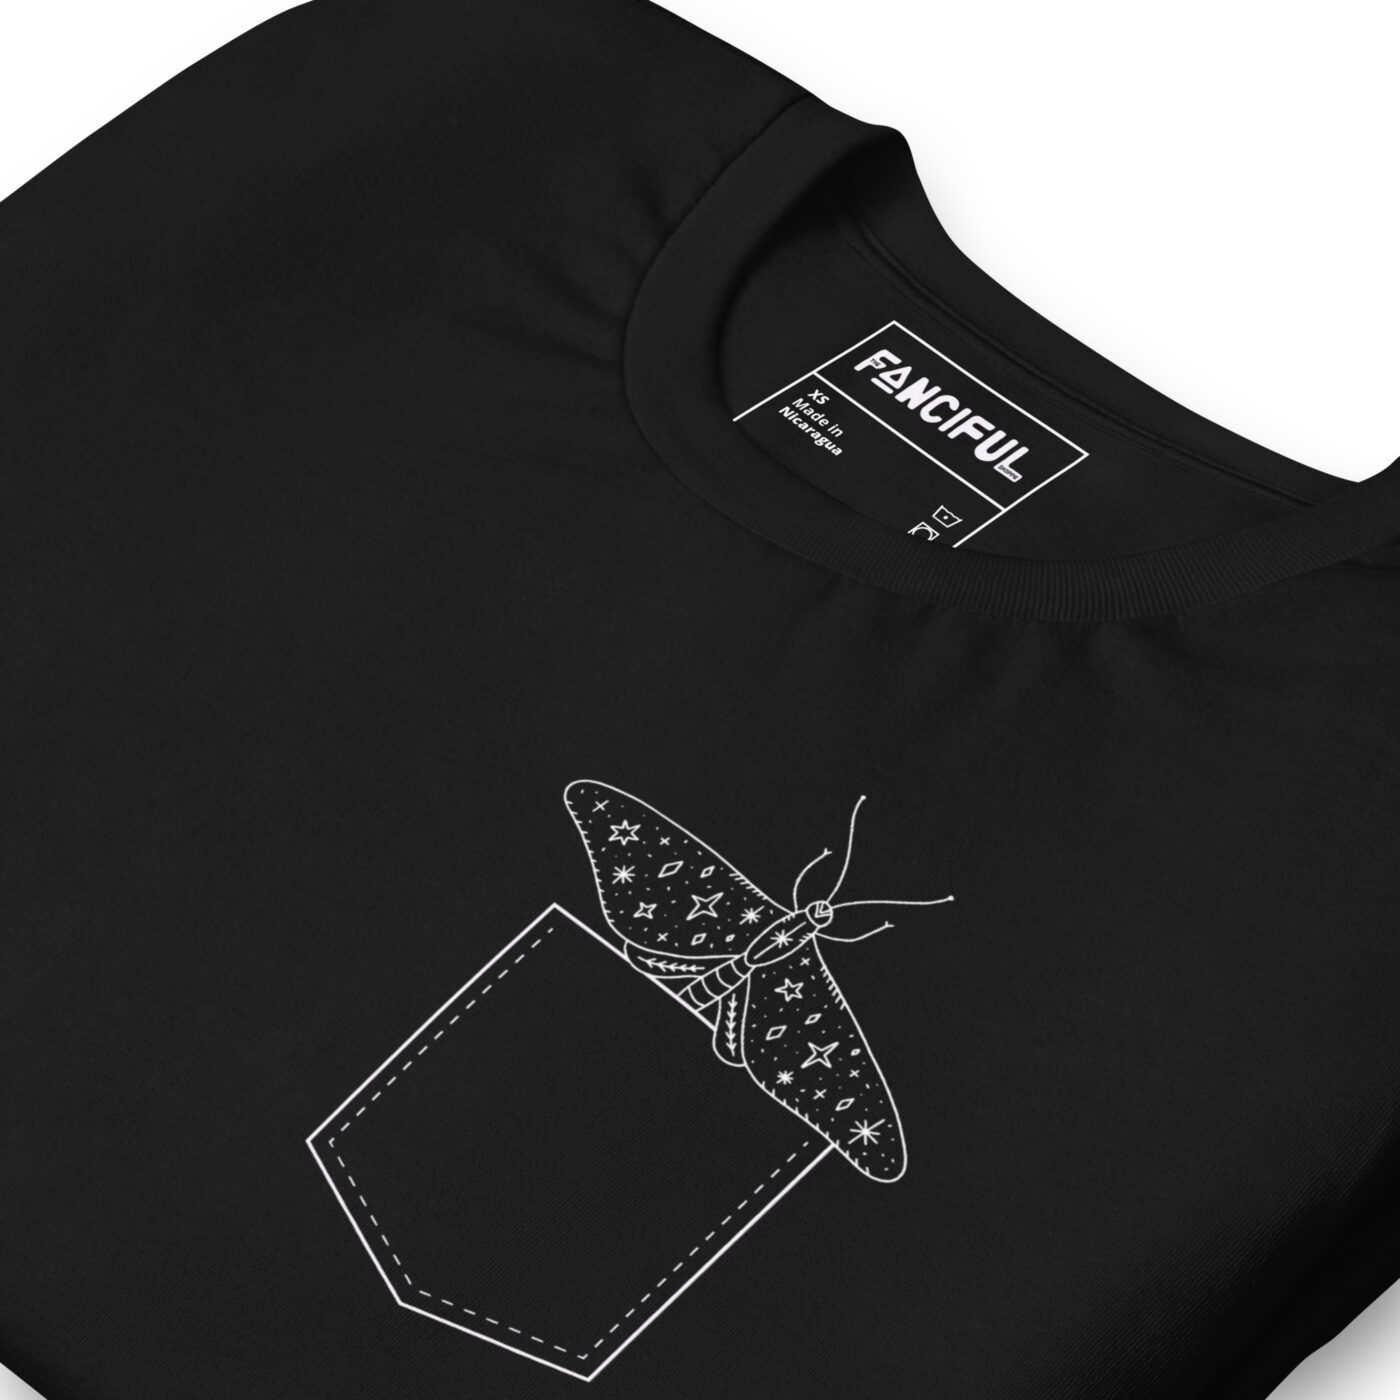 unisex staple t shirt black zoomed in 64c30f946542e